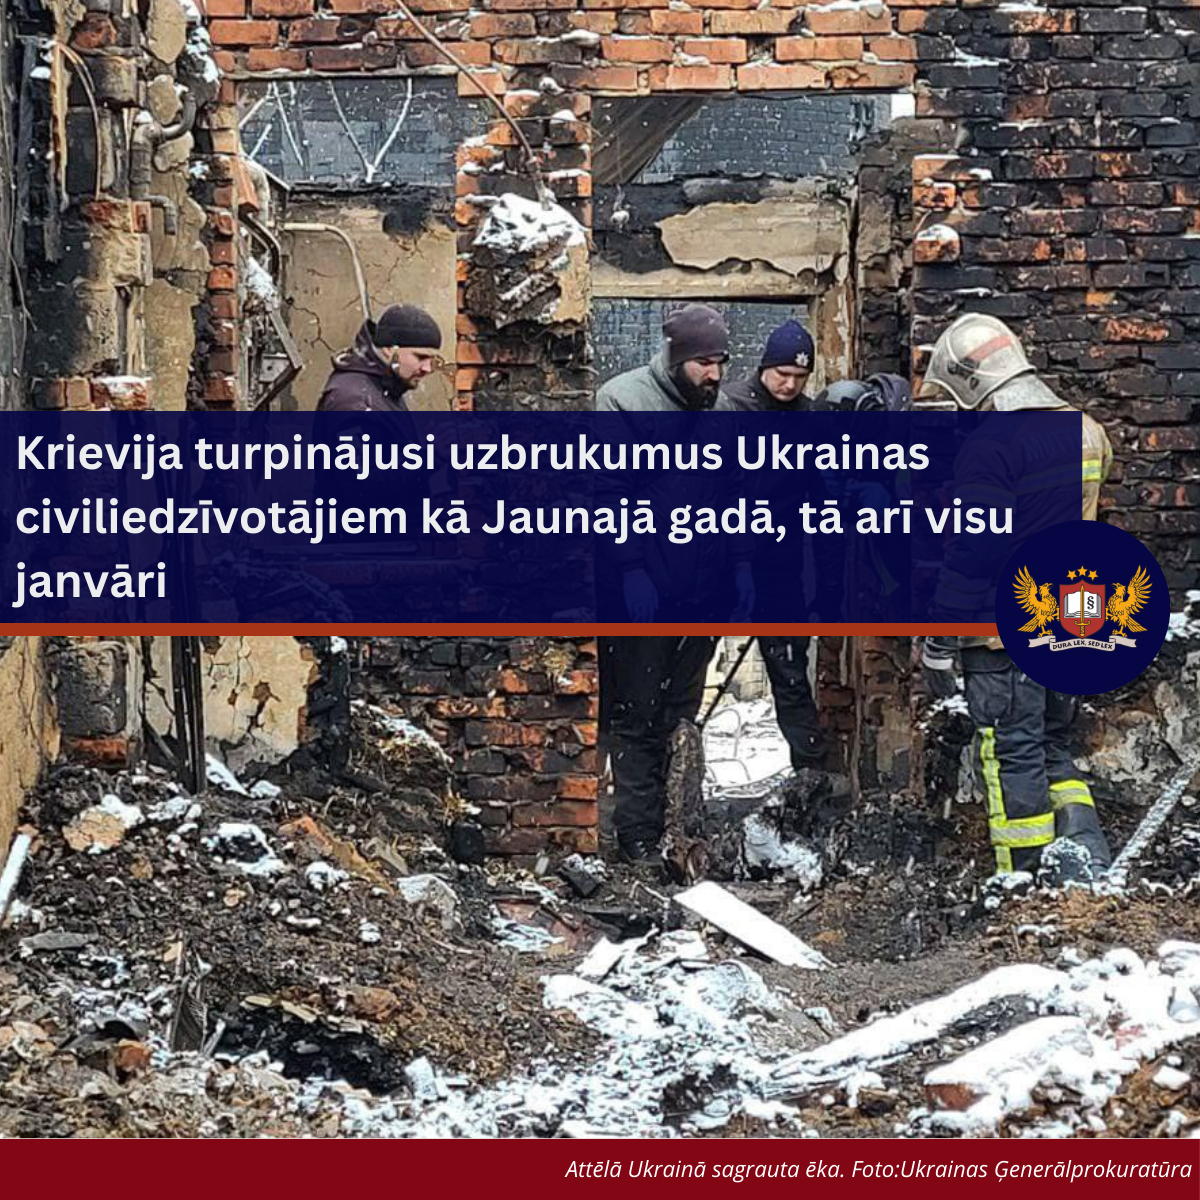 Attēls: Karš Ukrainā: Krievija turpinājusi uzbrukumus Ukrainas civiliedzīvotājiem kā Jaunajā gadā, tā arī visu janvāri